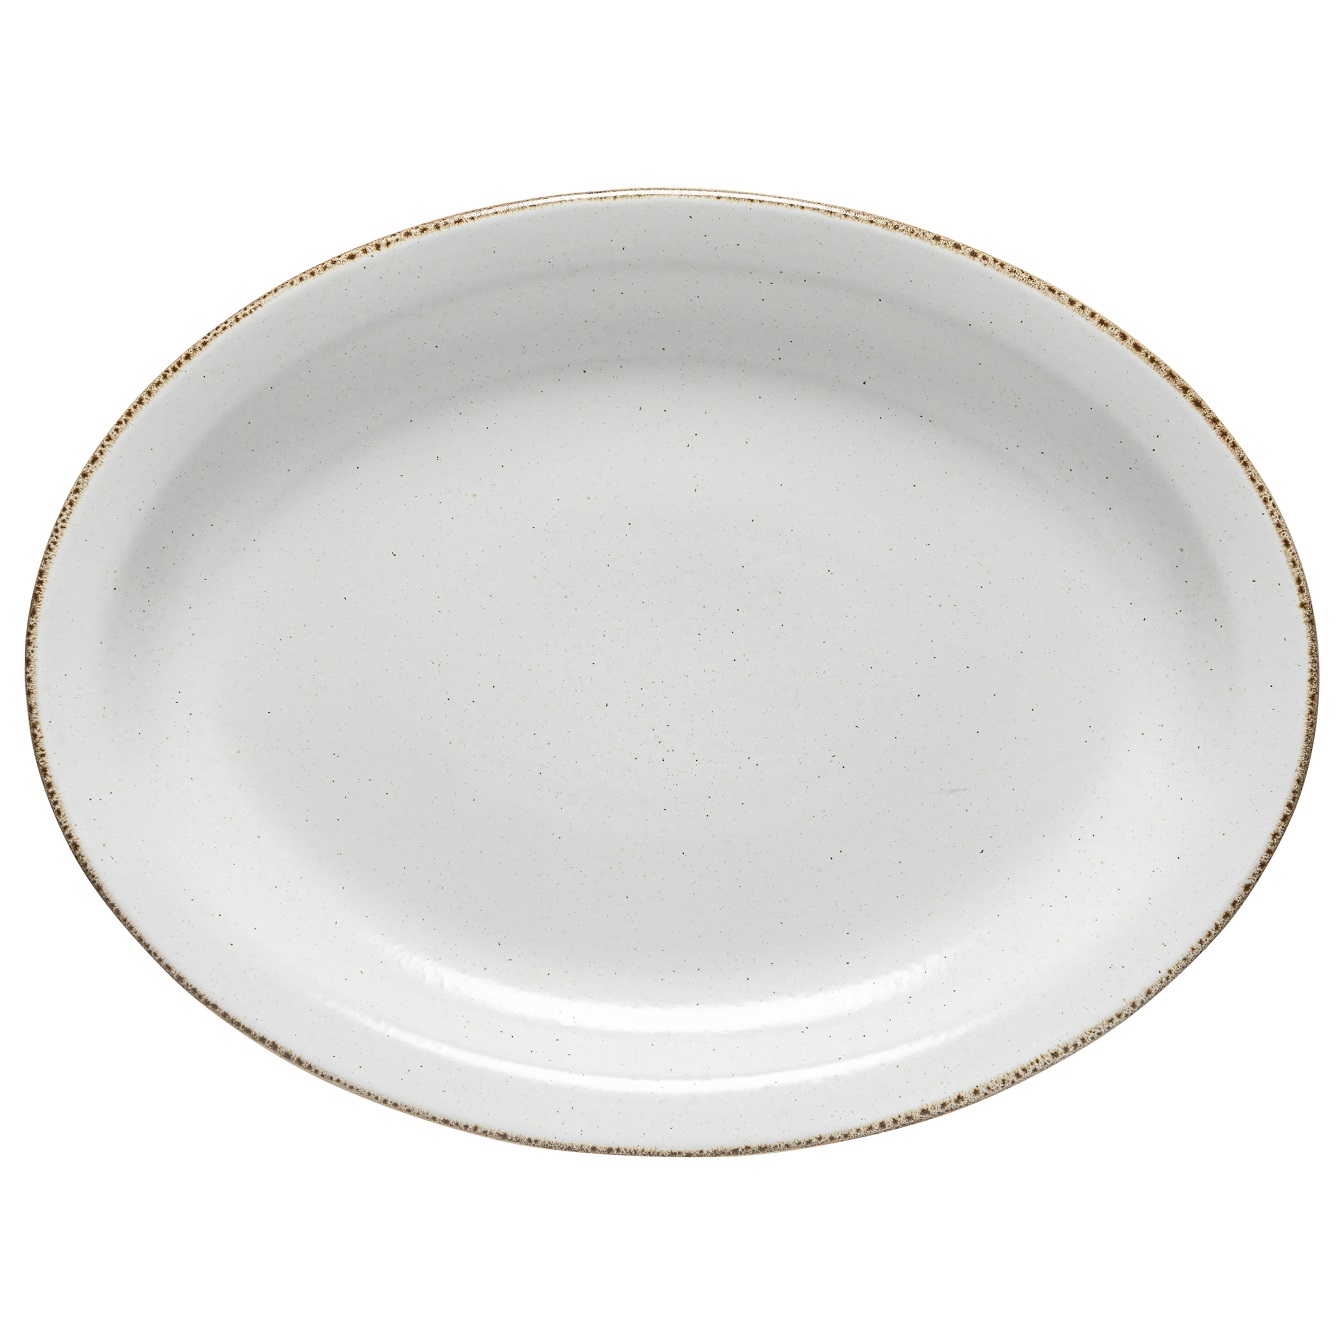 Positano White Oval Platter 40cm Gift